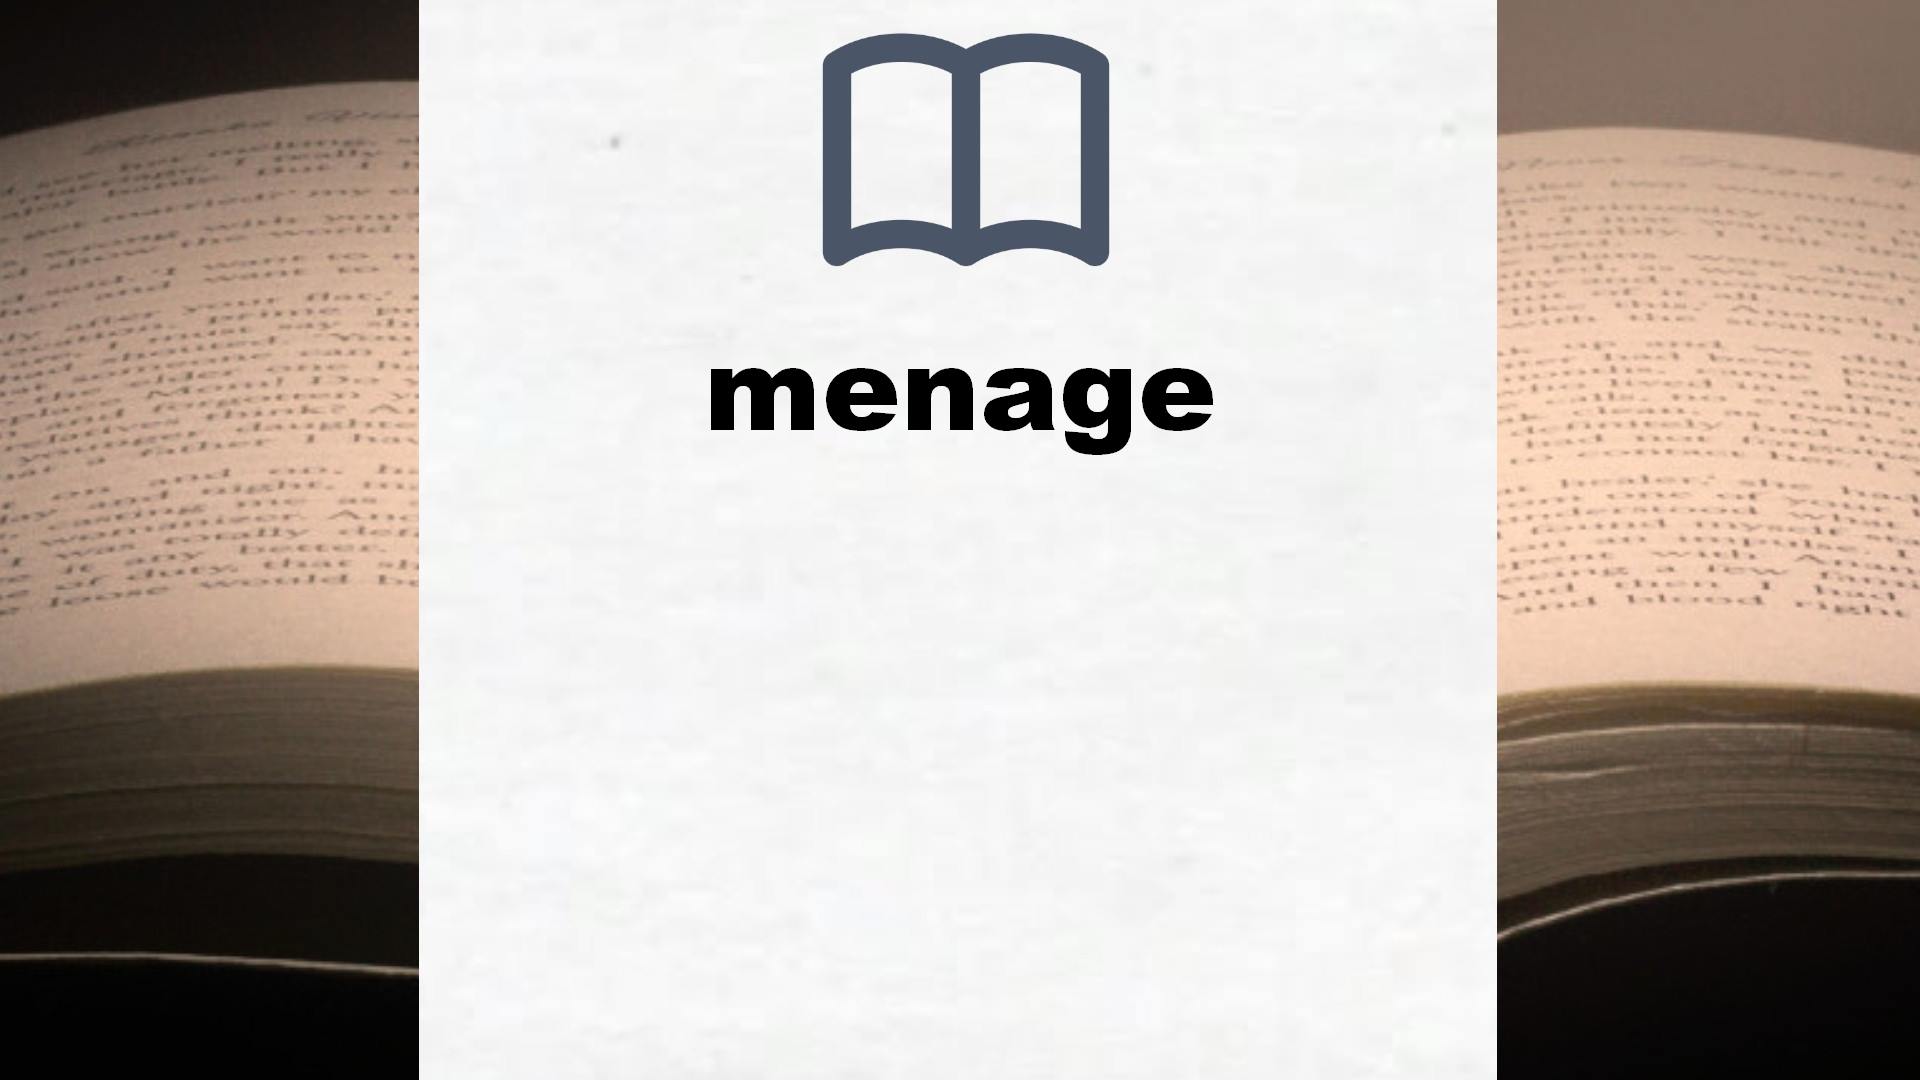 Libros sobre menage